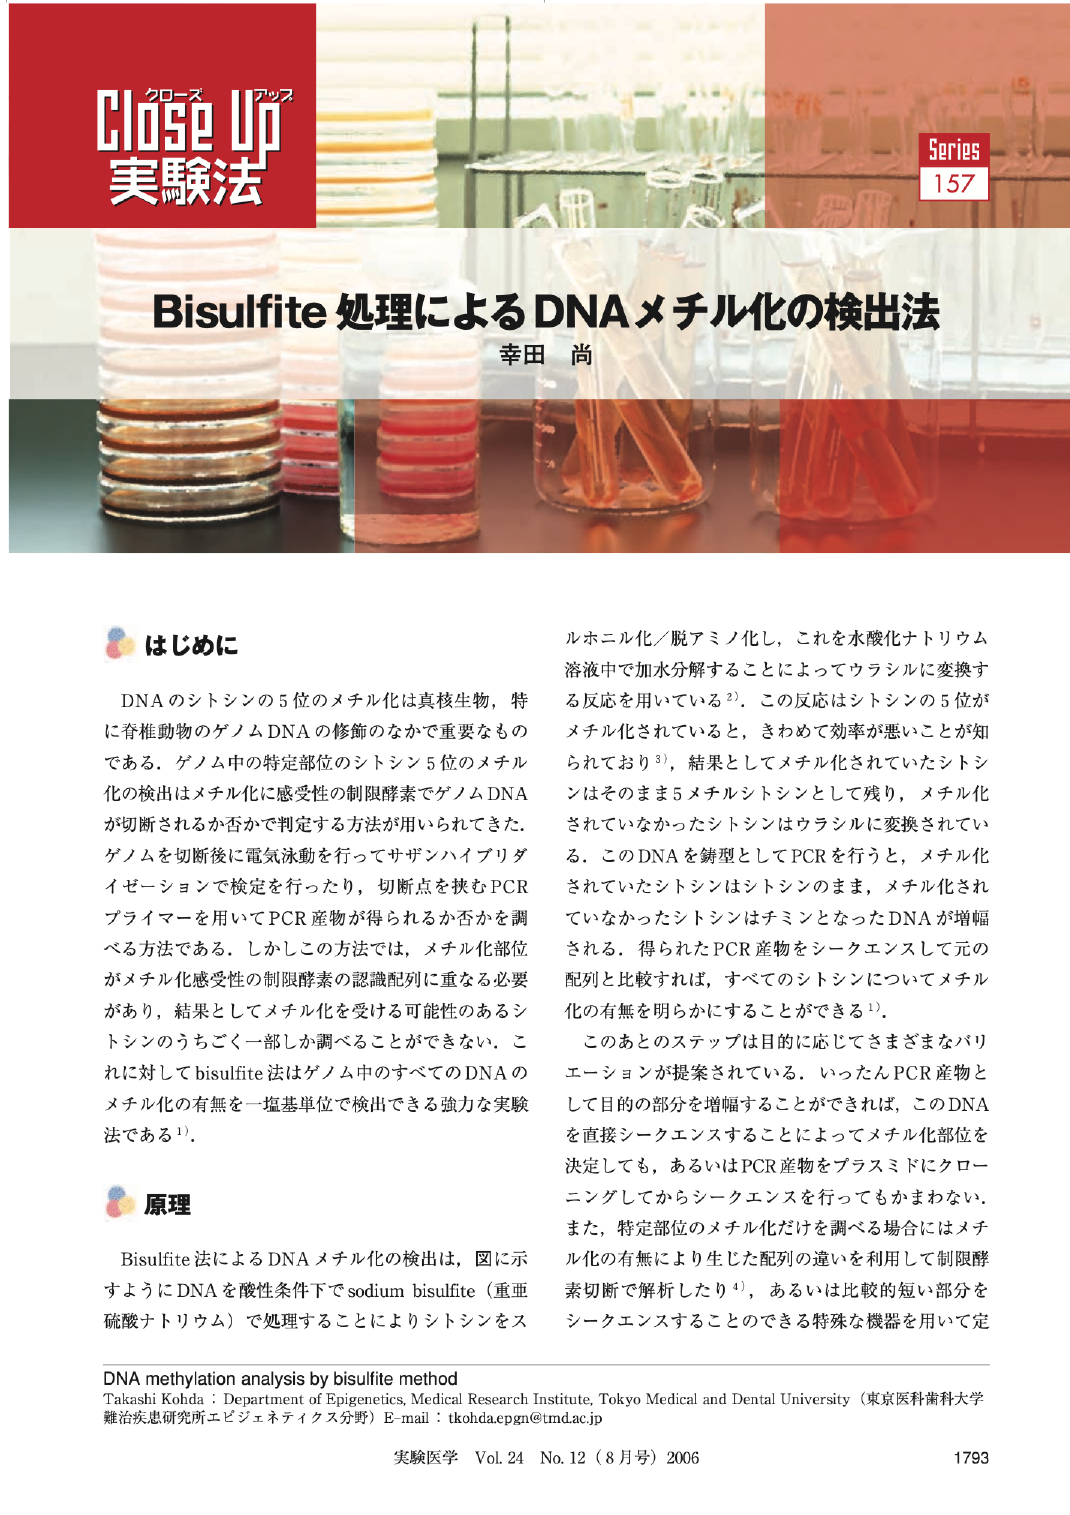 Bisulfite処理によるDNAメチル化の検出法